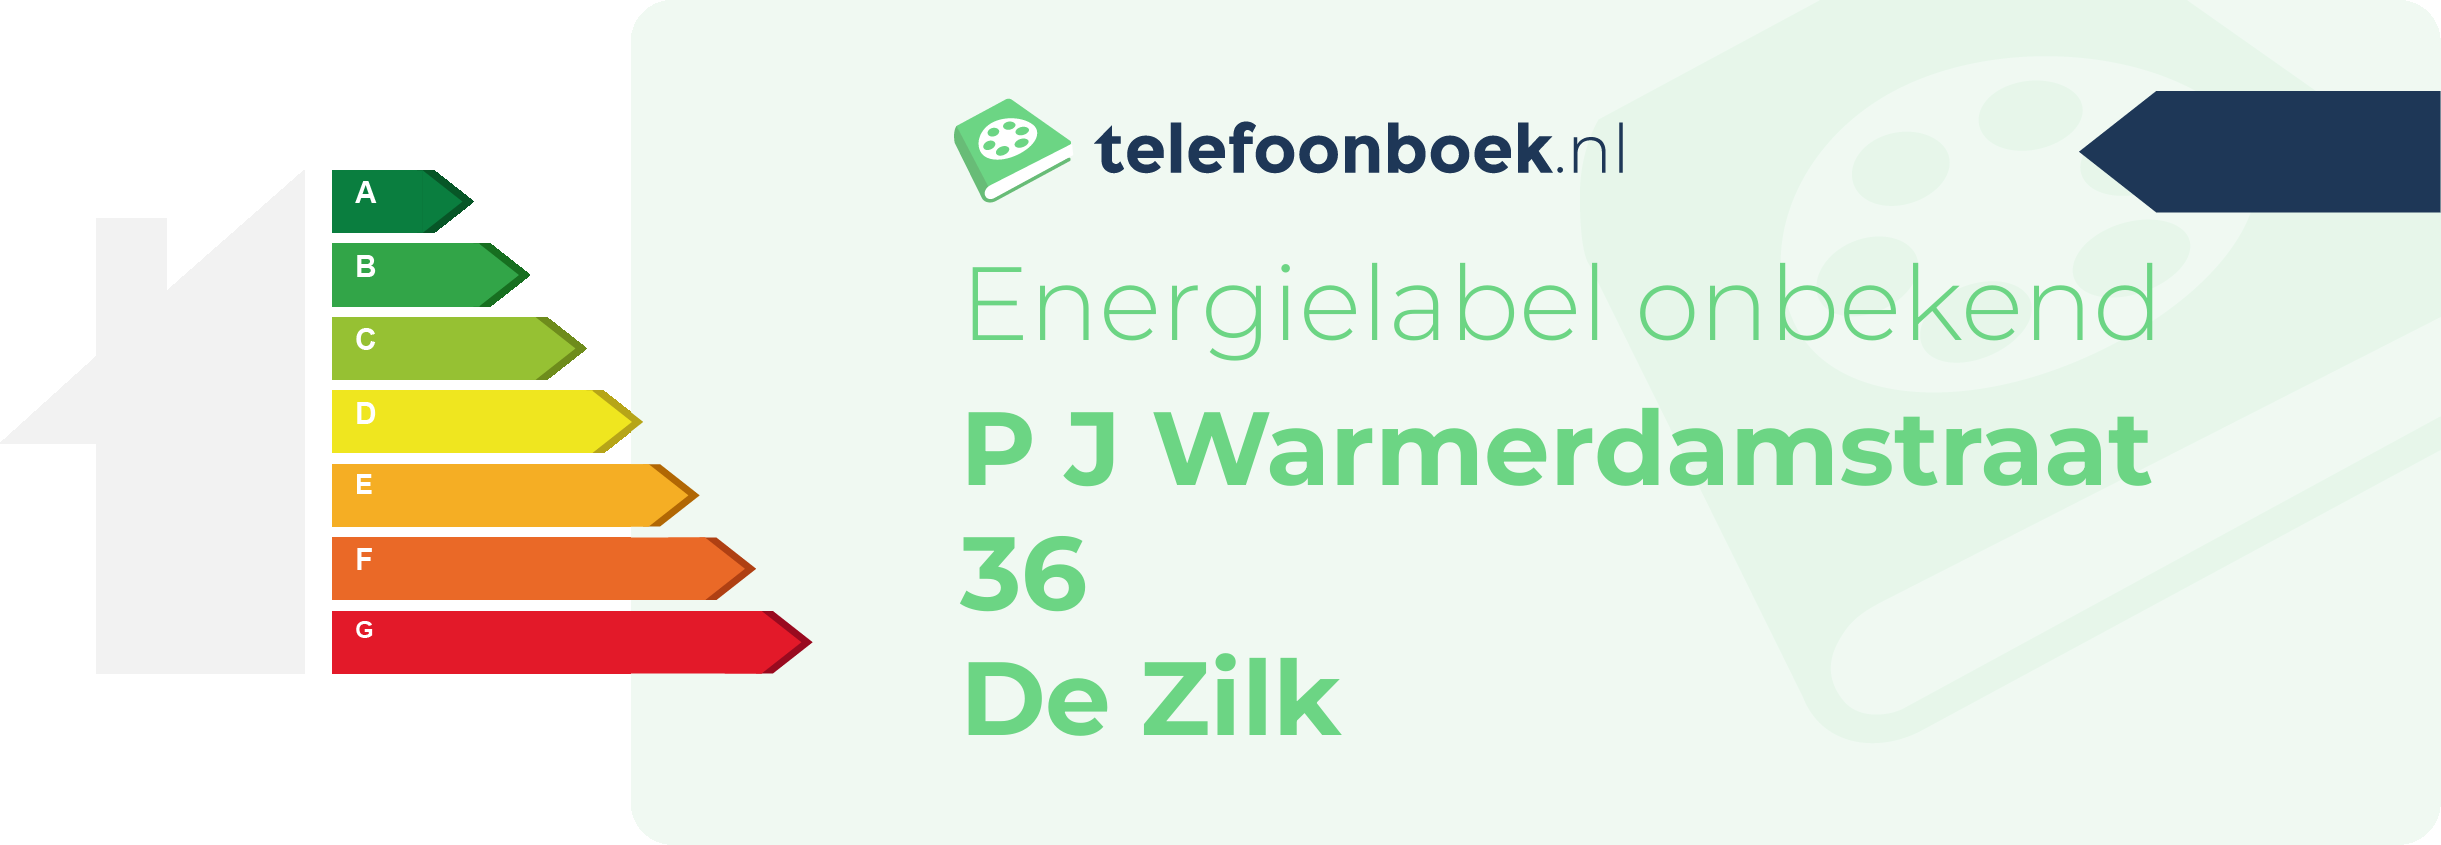 Energielabel P J Warmerdamstraat 36 De Zilk